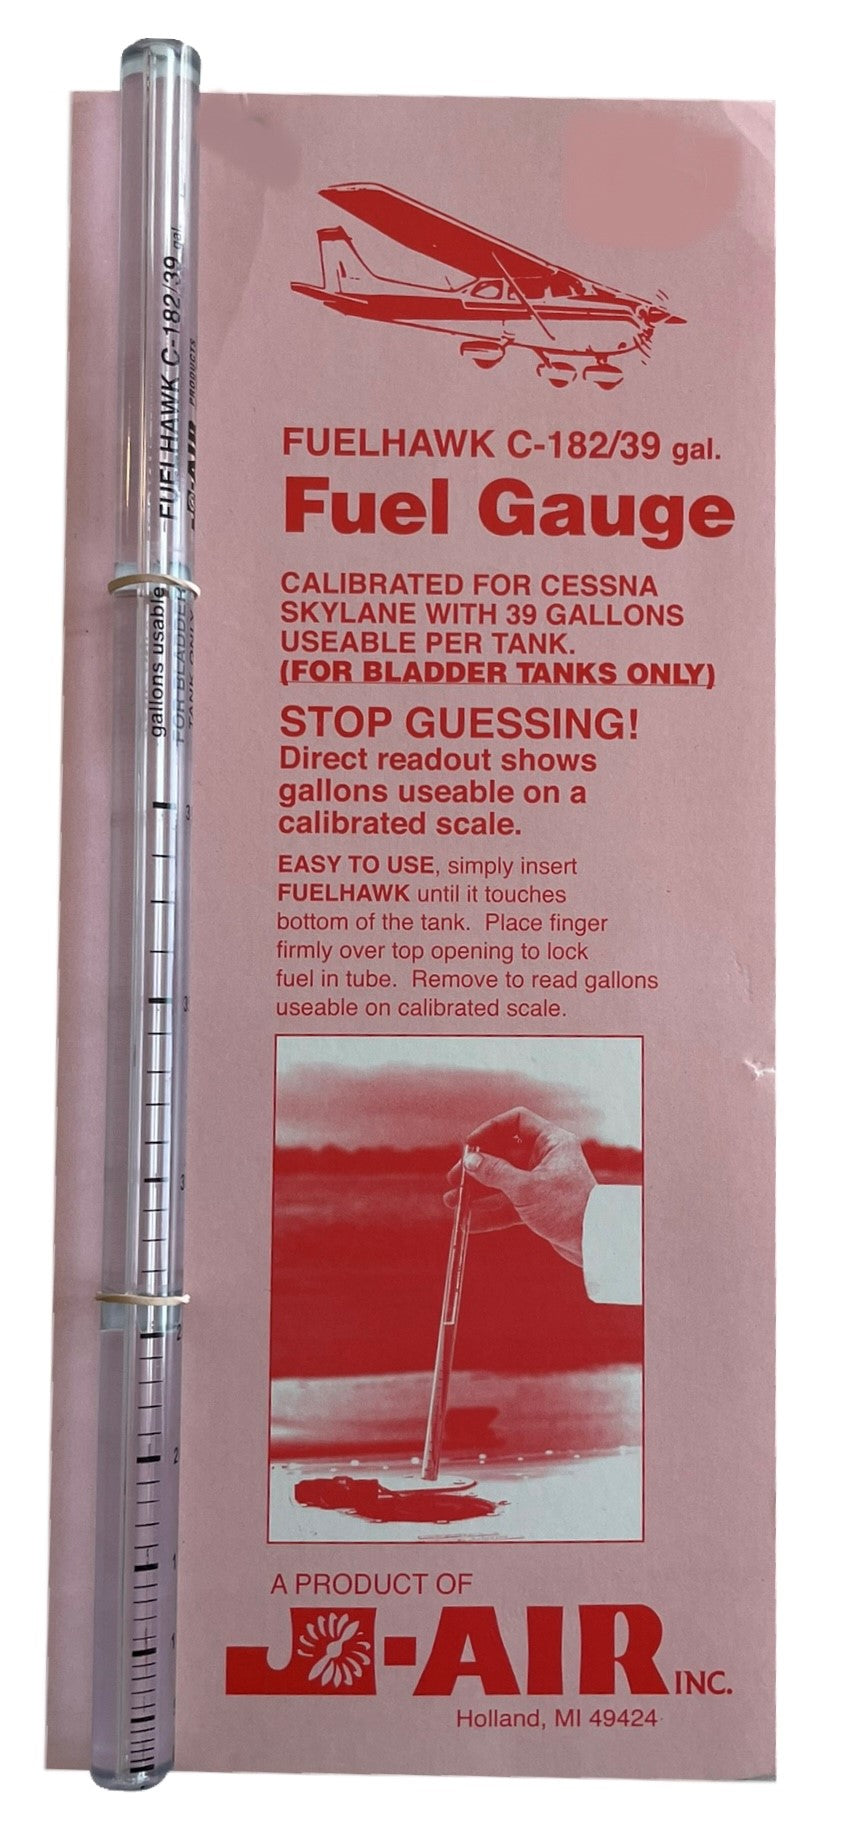 Fuel Gauge C182/39 gal.